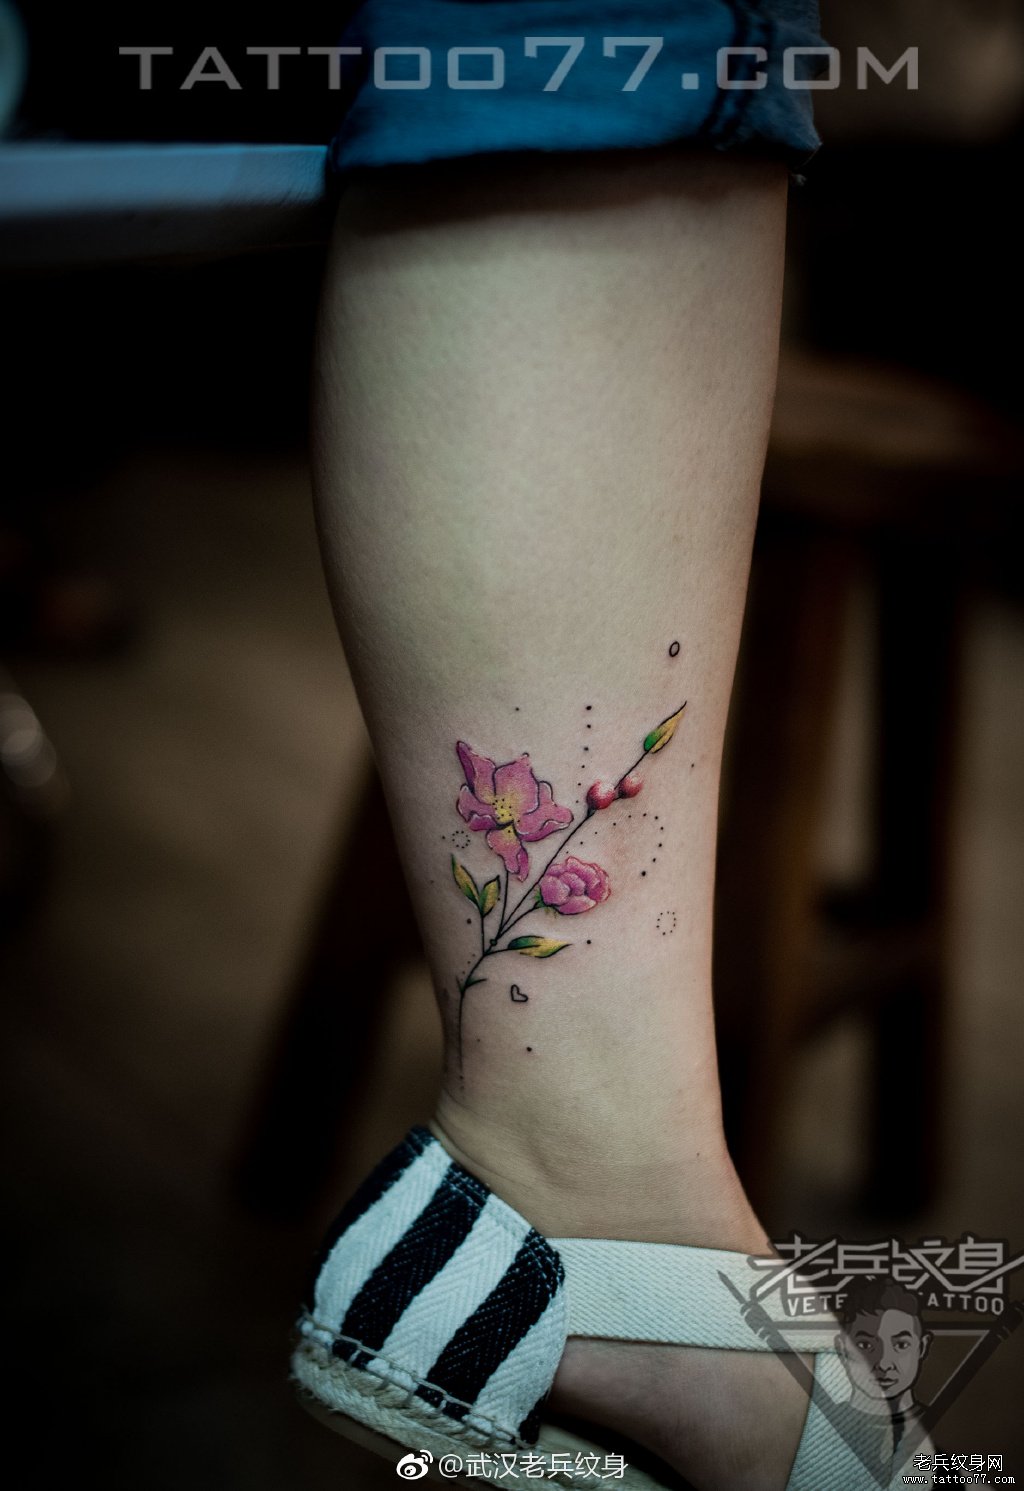 女生脚踝花卉纹身图案作品